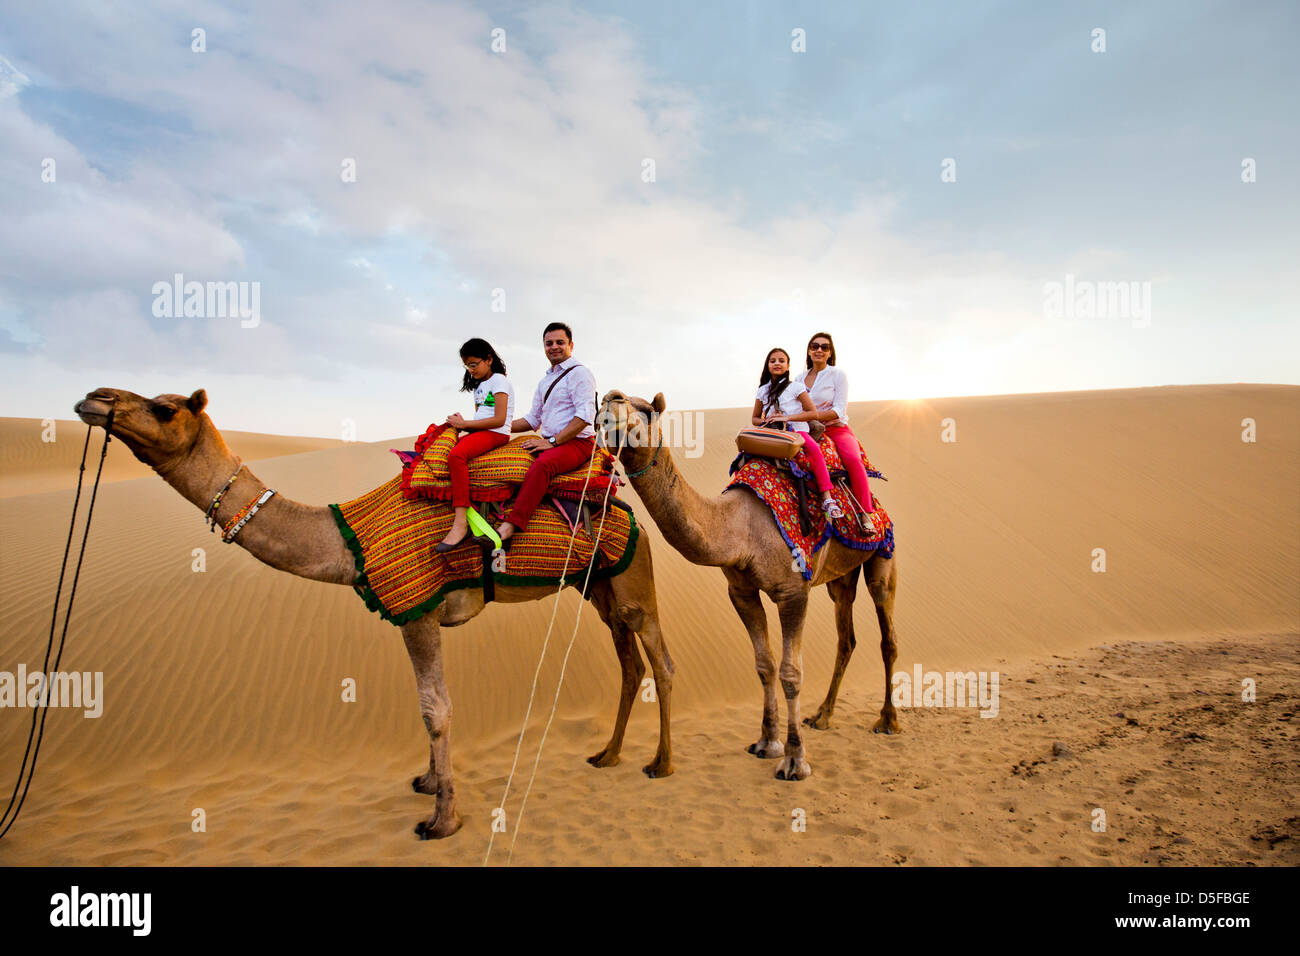 Los turistas disfrutando del Safari del camello en un desierto, el desierto de Thar, Jaisalmer, Rajasthan, India Foto de stock